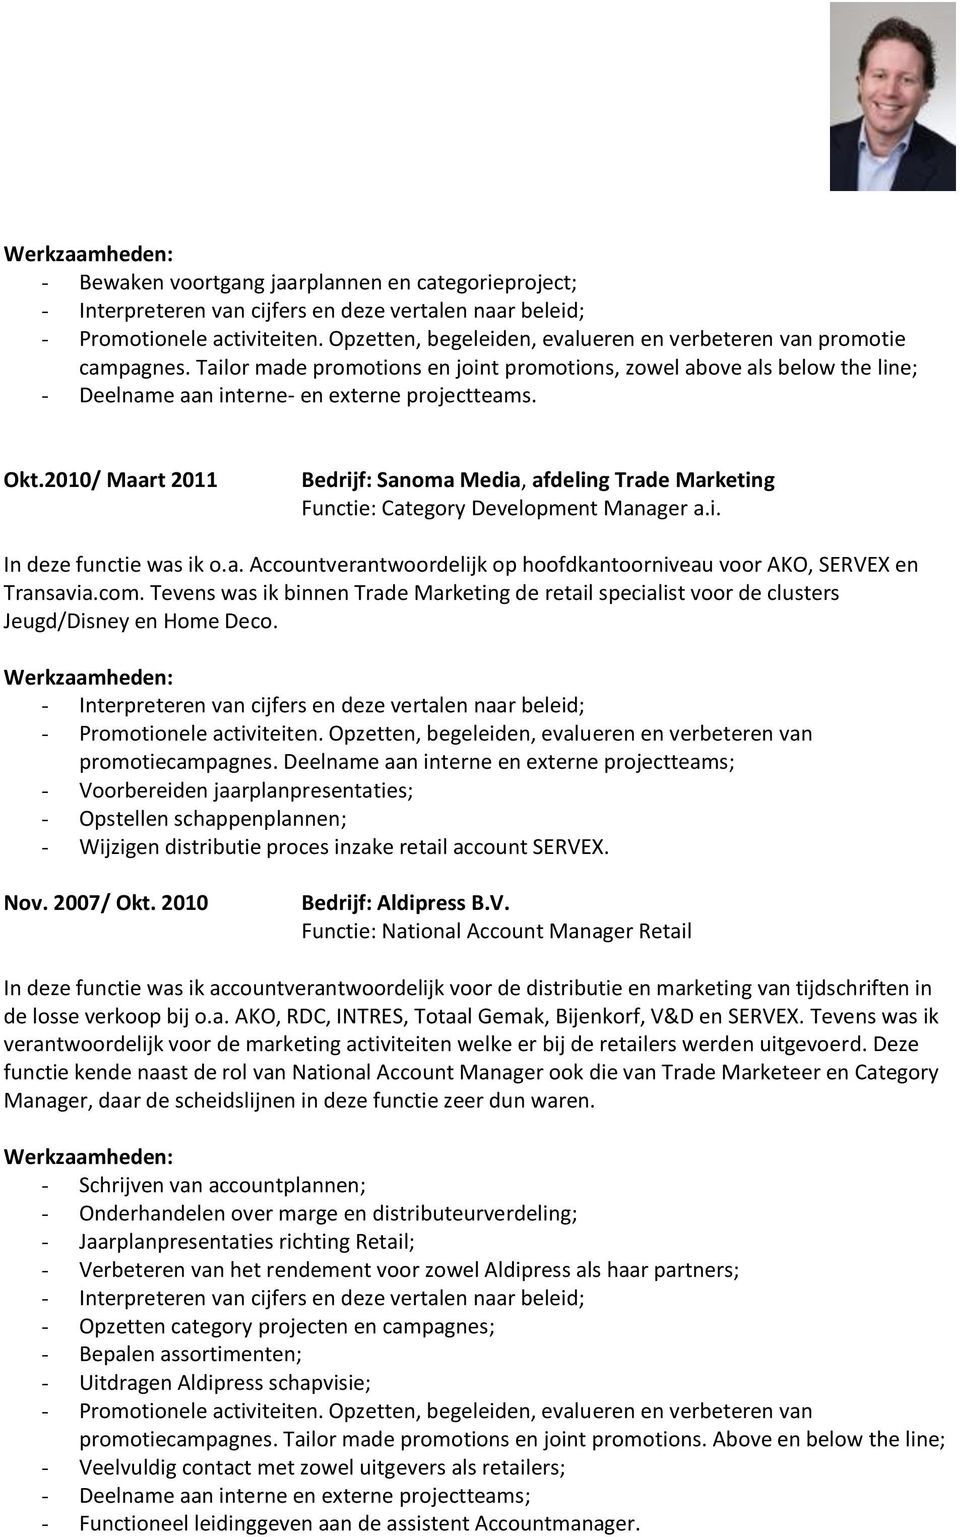 2010/ Maart 2011 Bedrijf: Sanoma Media, afdeling Trade Marketing Functie: Category Development Manager a.i. In deze functie was ik o.a. Accountverantwoordelijk op hoofdkantoorniveau voor AKO, SERVEX en Transavia.